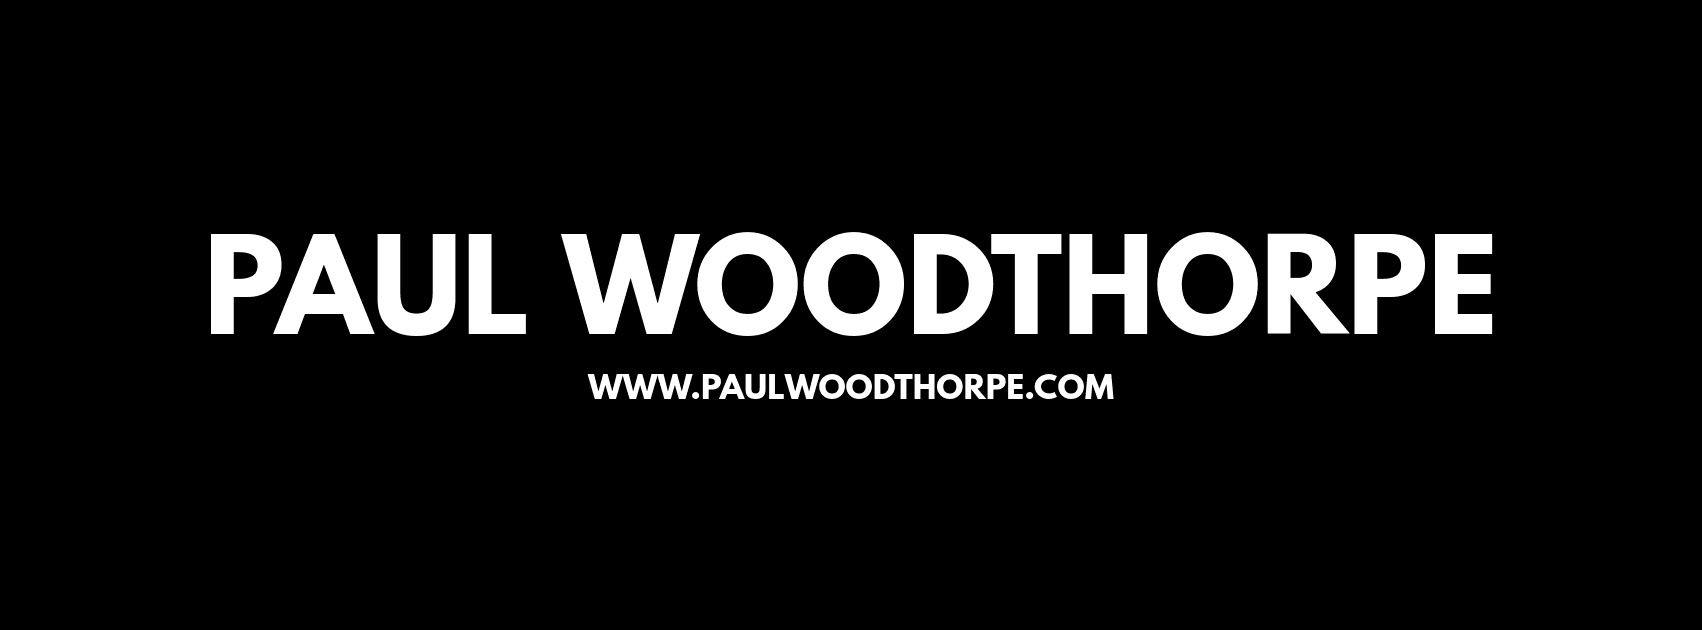 PaulWoodthorpe banner